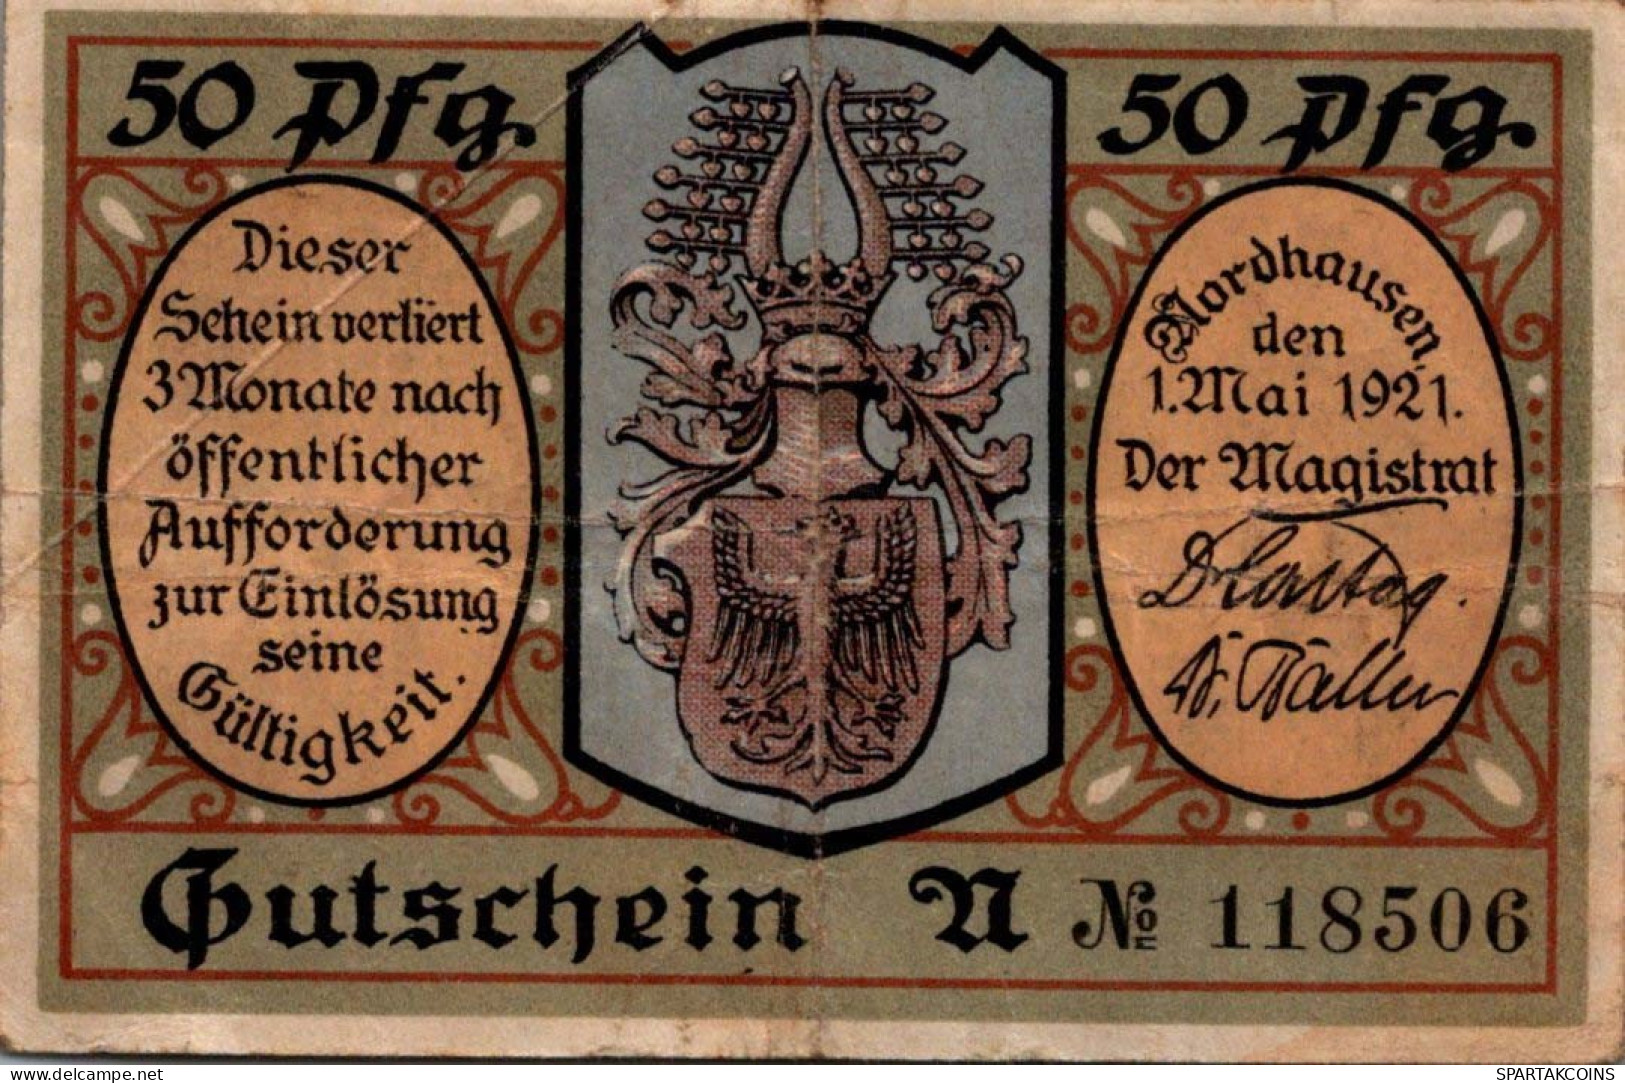 50 PFENNIG 1921 Stadt NORDHAUSEN Saxony DEUTSCHLAND Notgeld Banknote #PH872 - [11] Local Banknote Issues